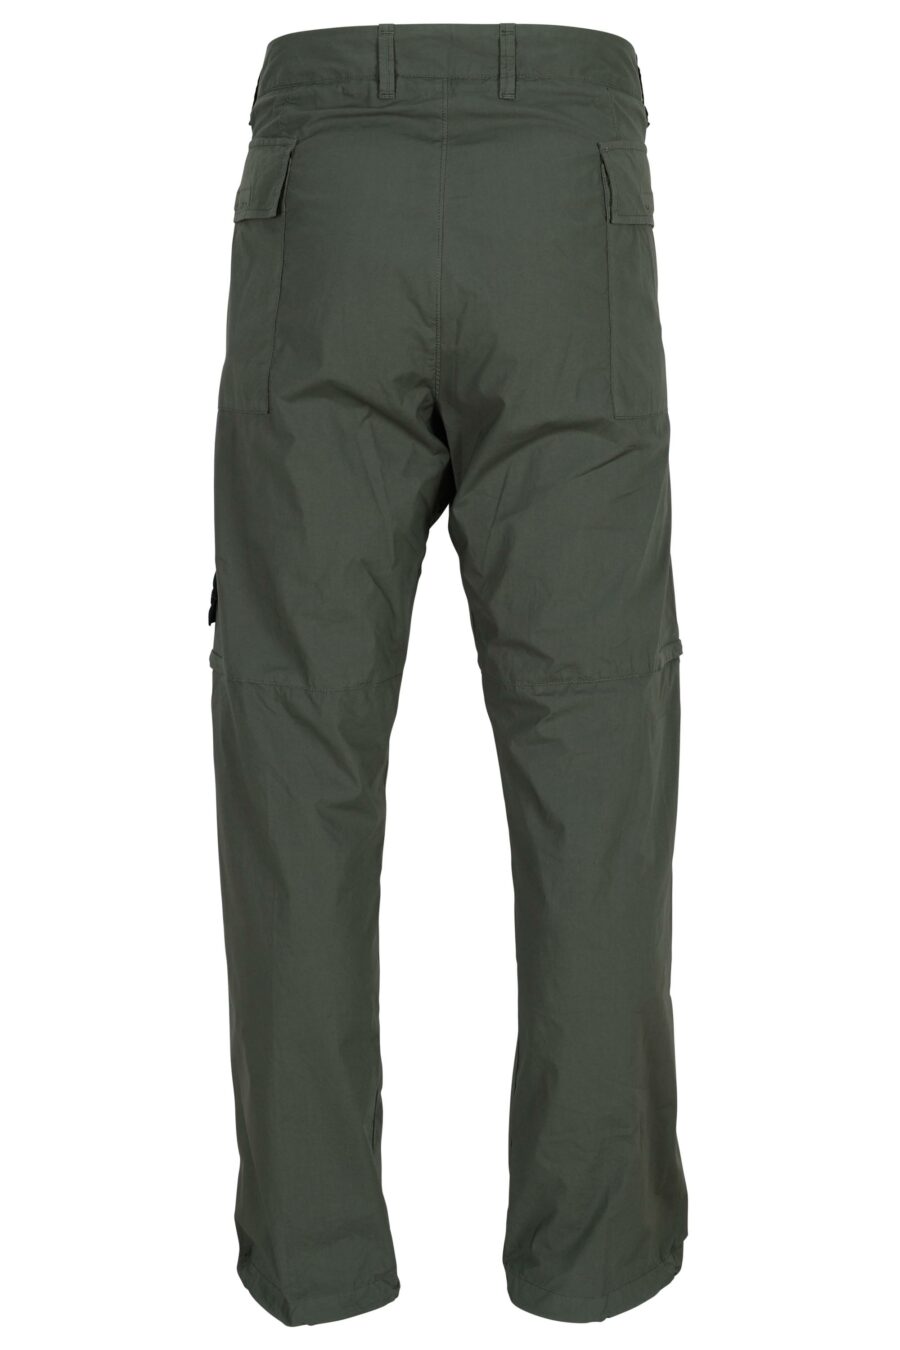 Pantalón verde militar "regular" con logo parche brújula - 8052572955013 1